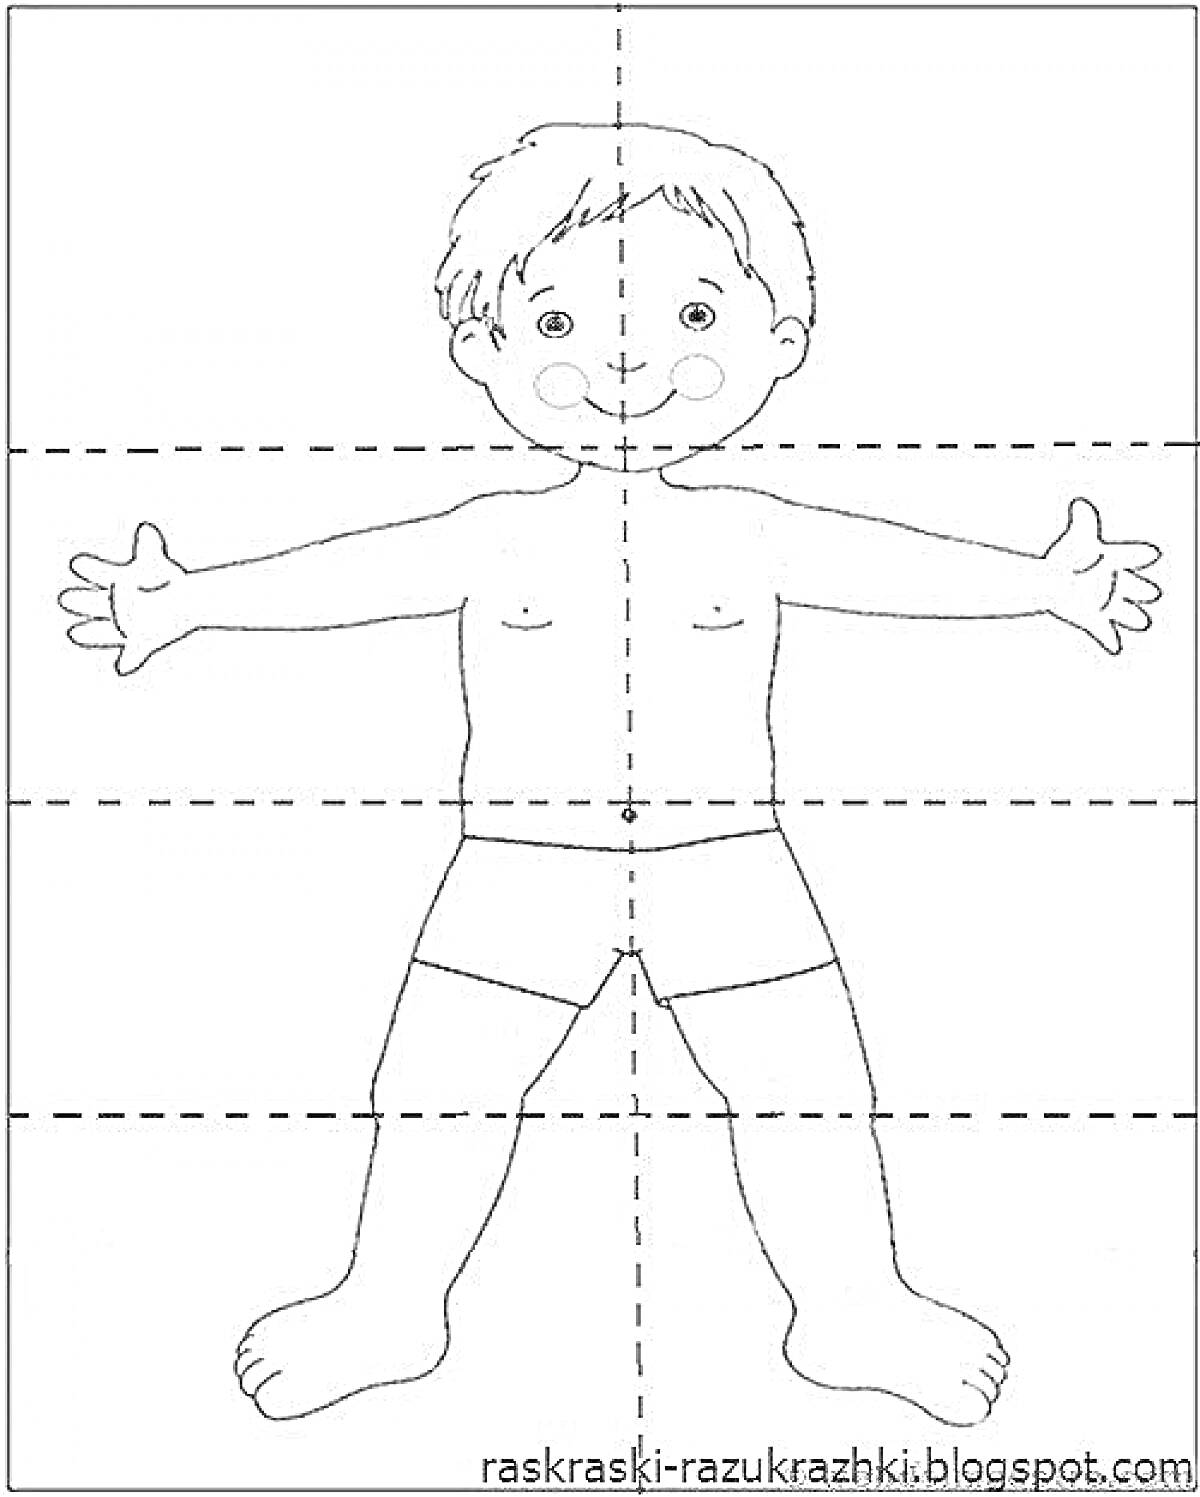 На раскраске изображено: Мальчик, Голова, Волосы, Глаза, Рот, Уши, Щеки, Руки, Пальцы, Ноги, Трусы, Тело человека